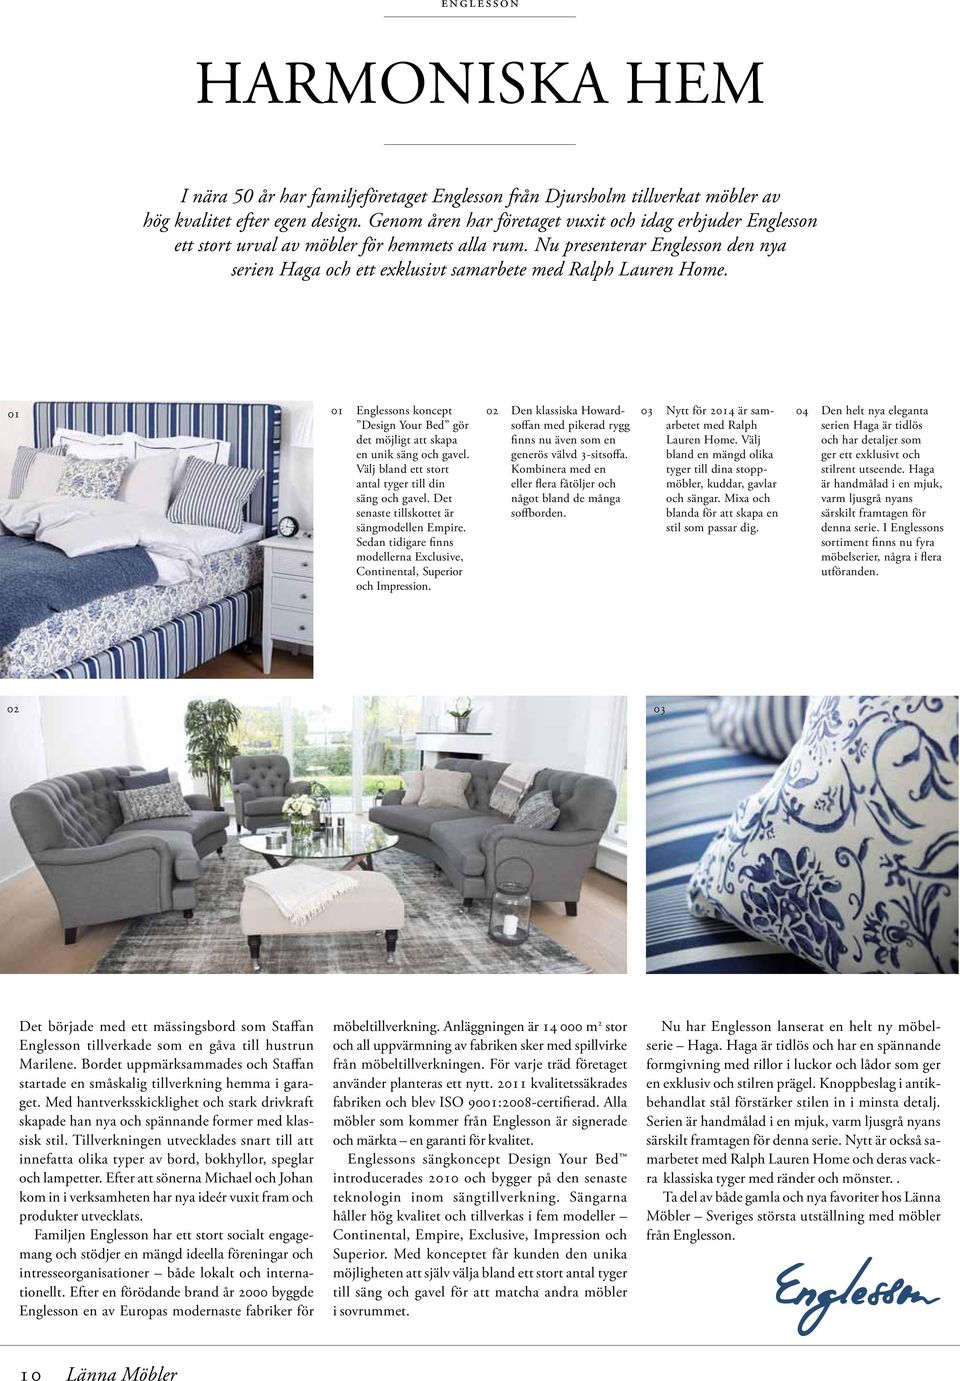 Nu presenterar Englesson den nya serien Haga och ett exklusivt samarbete med Ralph Lauren Home. Englessons koncept Design Your Bed gör det möjligt att skapa en unik säng och gavel.